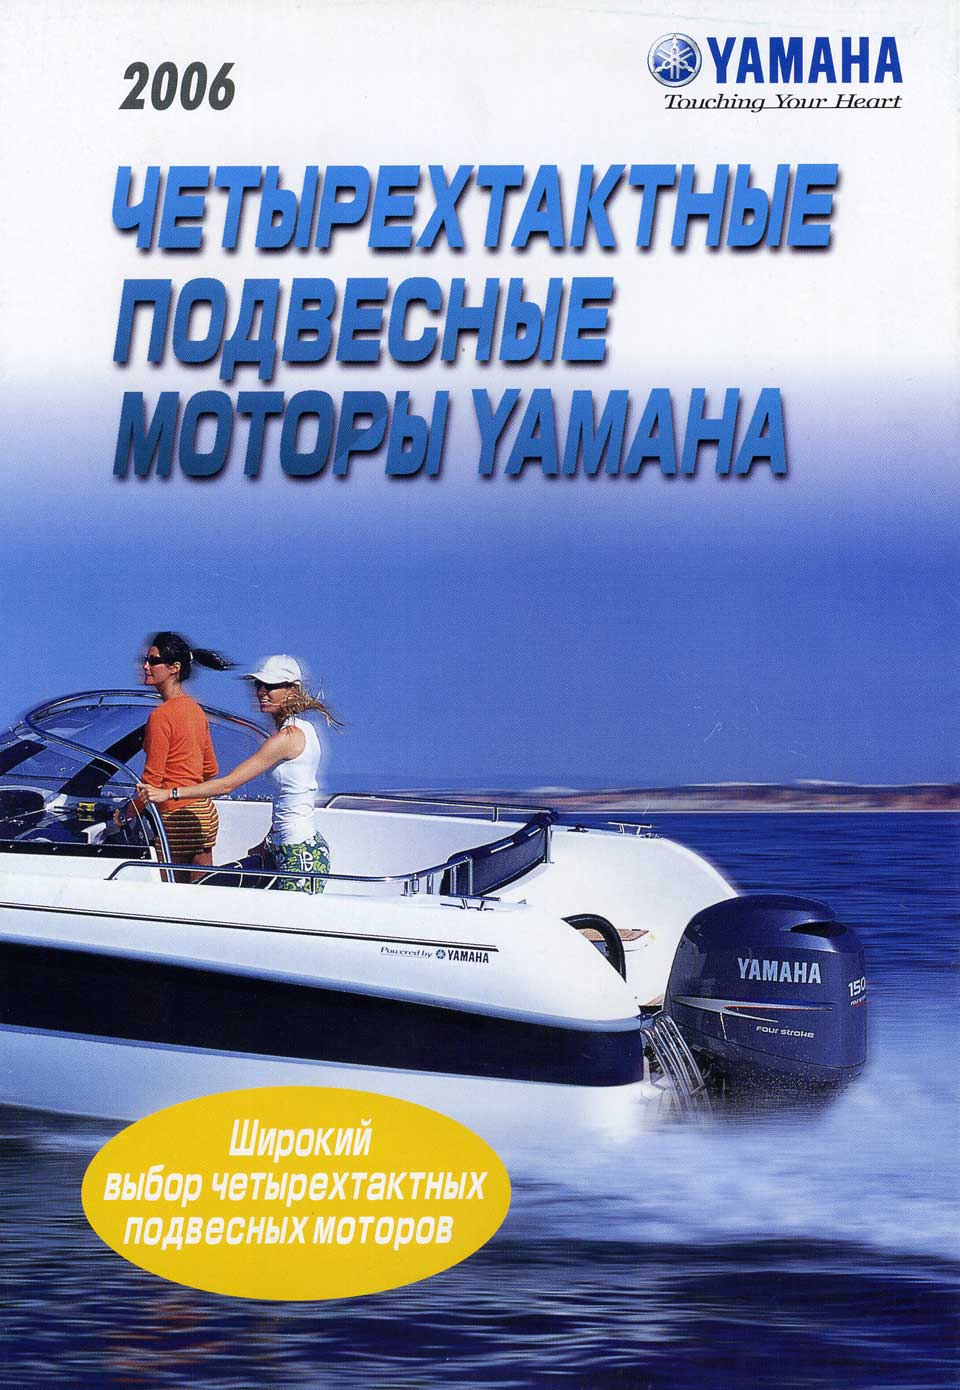   4-stroke Yamaha 2006 